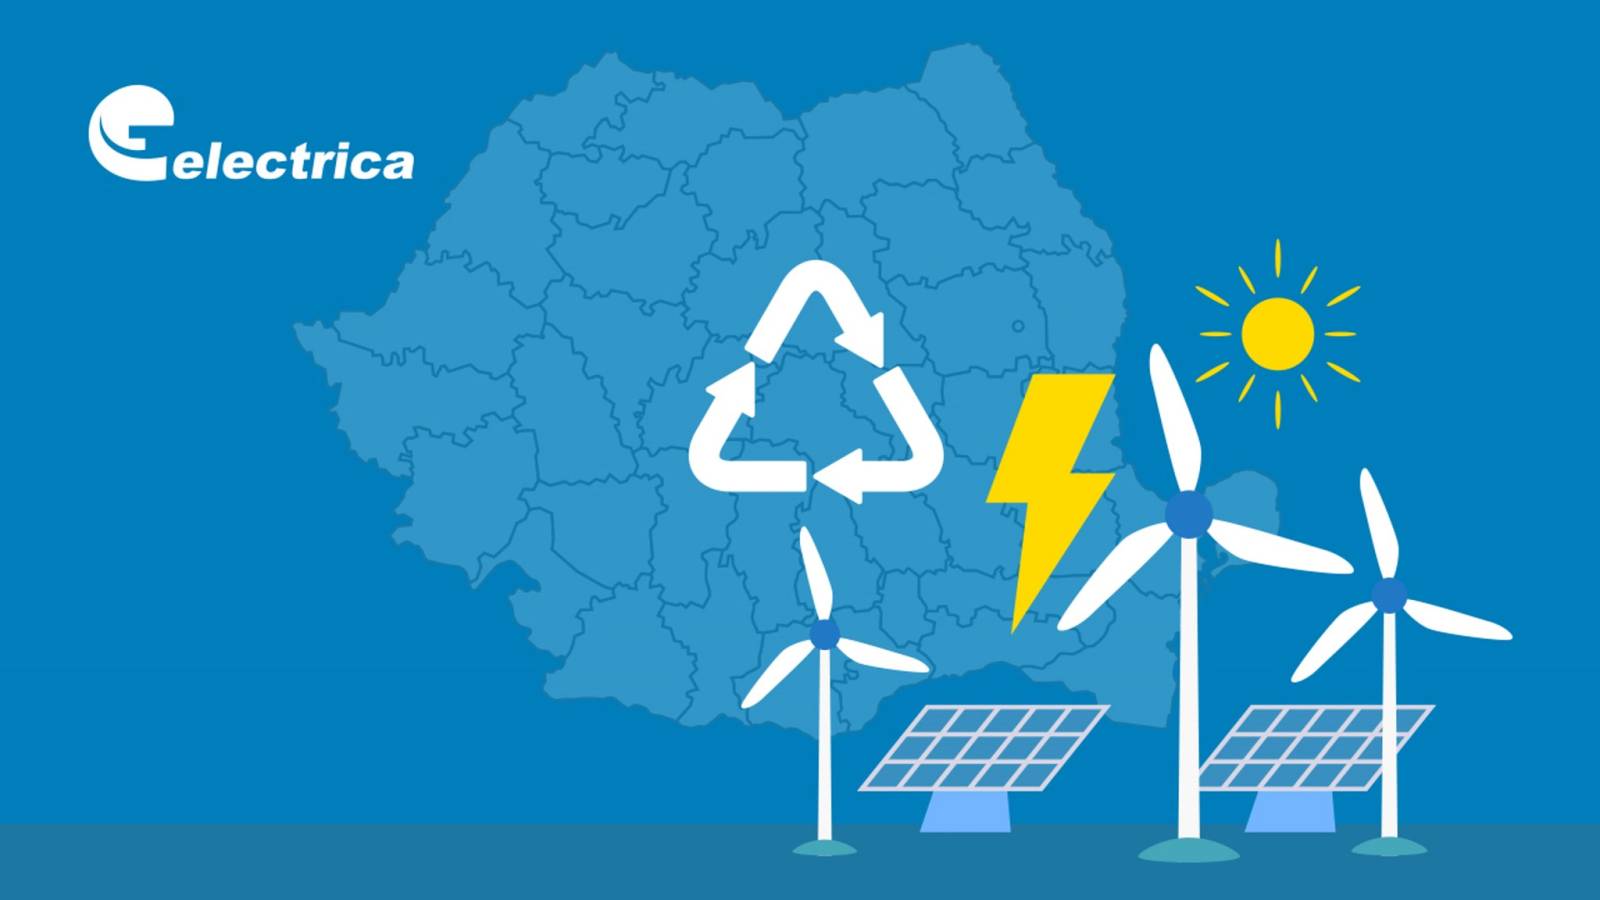 Electrica WICHTIGE offizielle Maßnahmen für rumänische Kunden